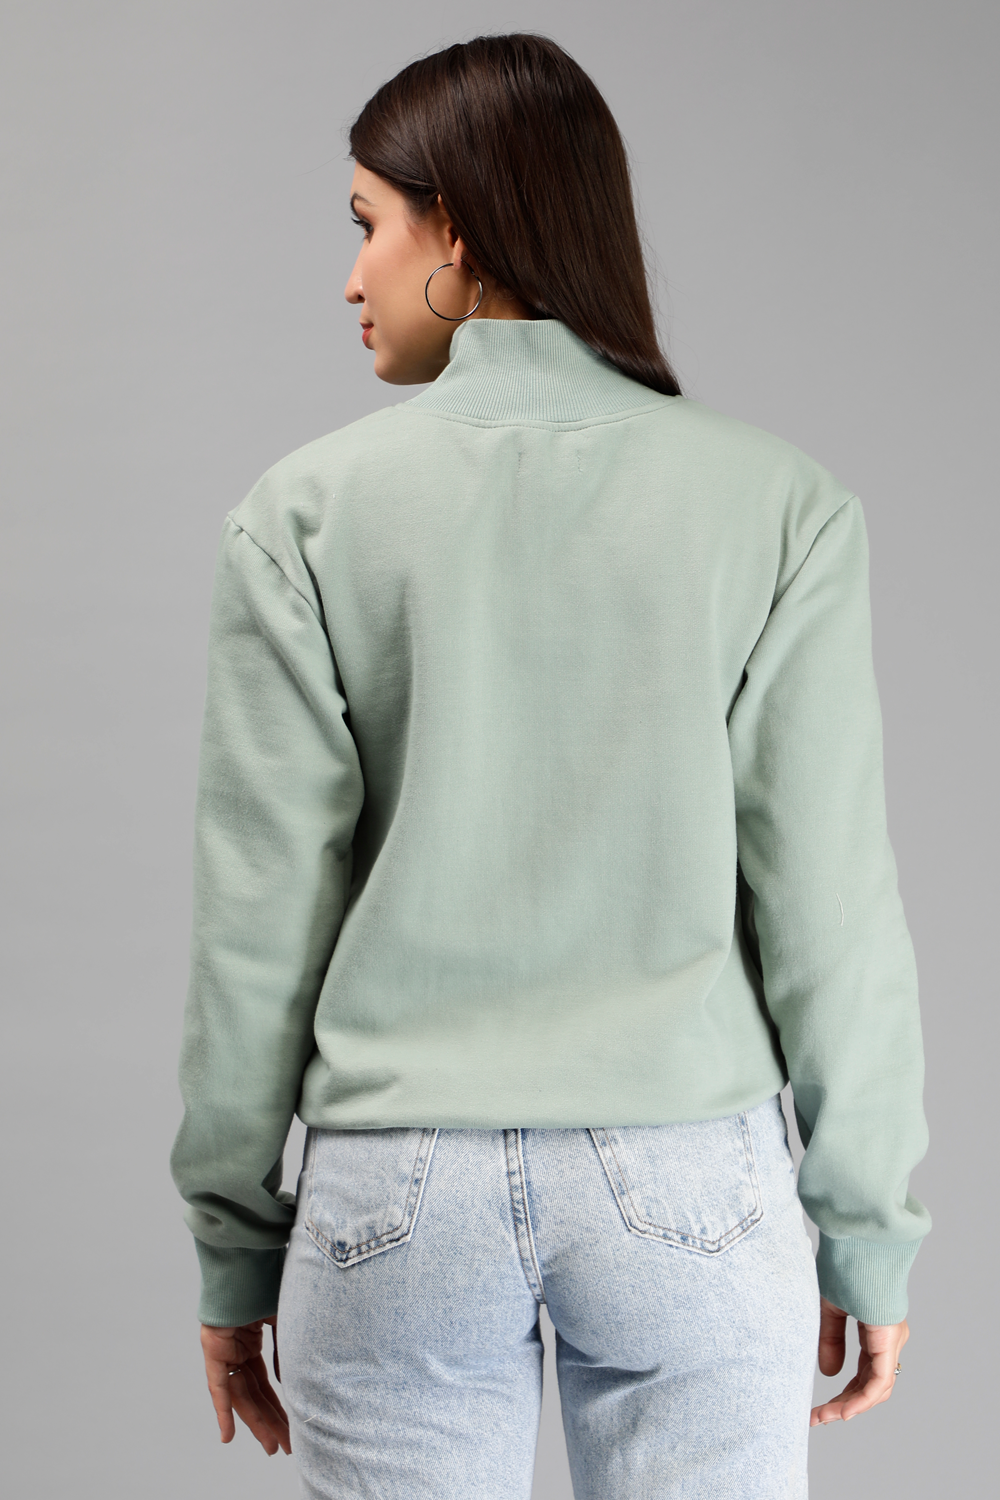 Miga's Women Winter Sweatshirt & Hoodies Olive Green